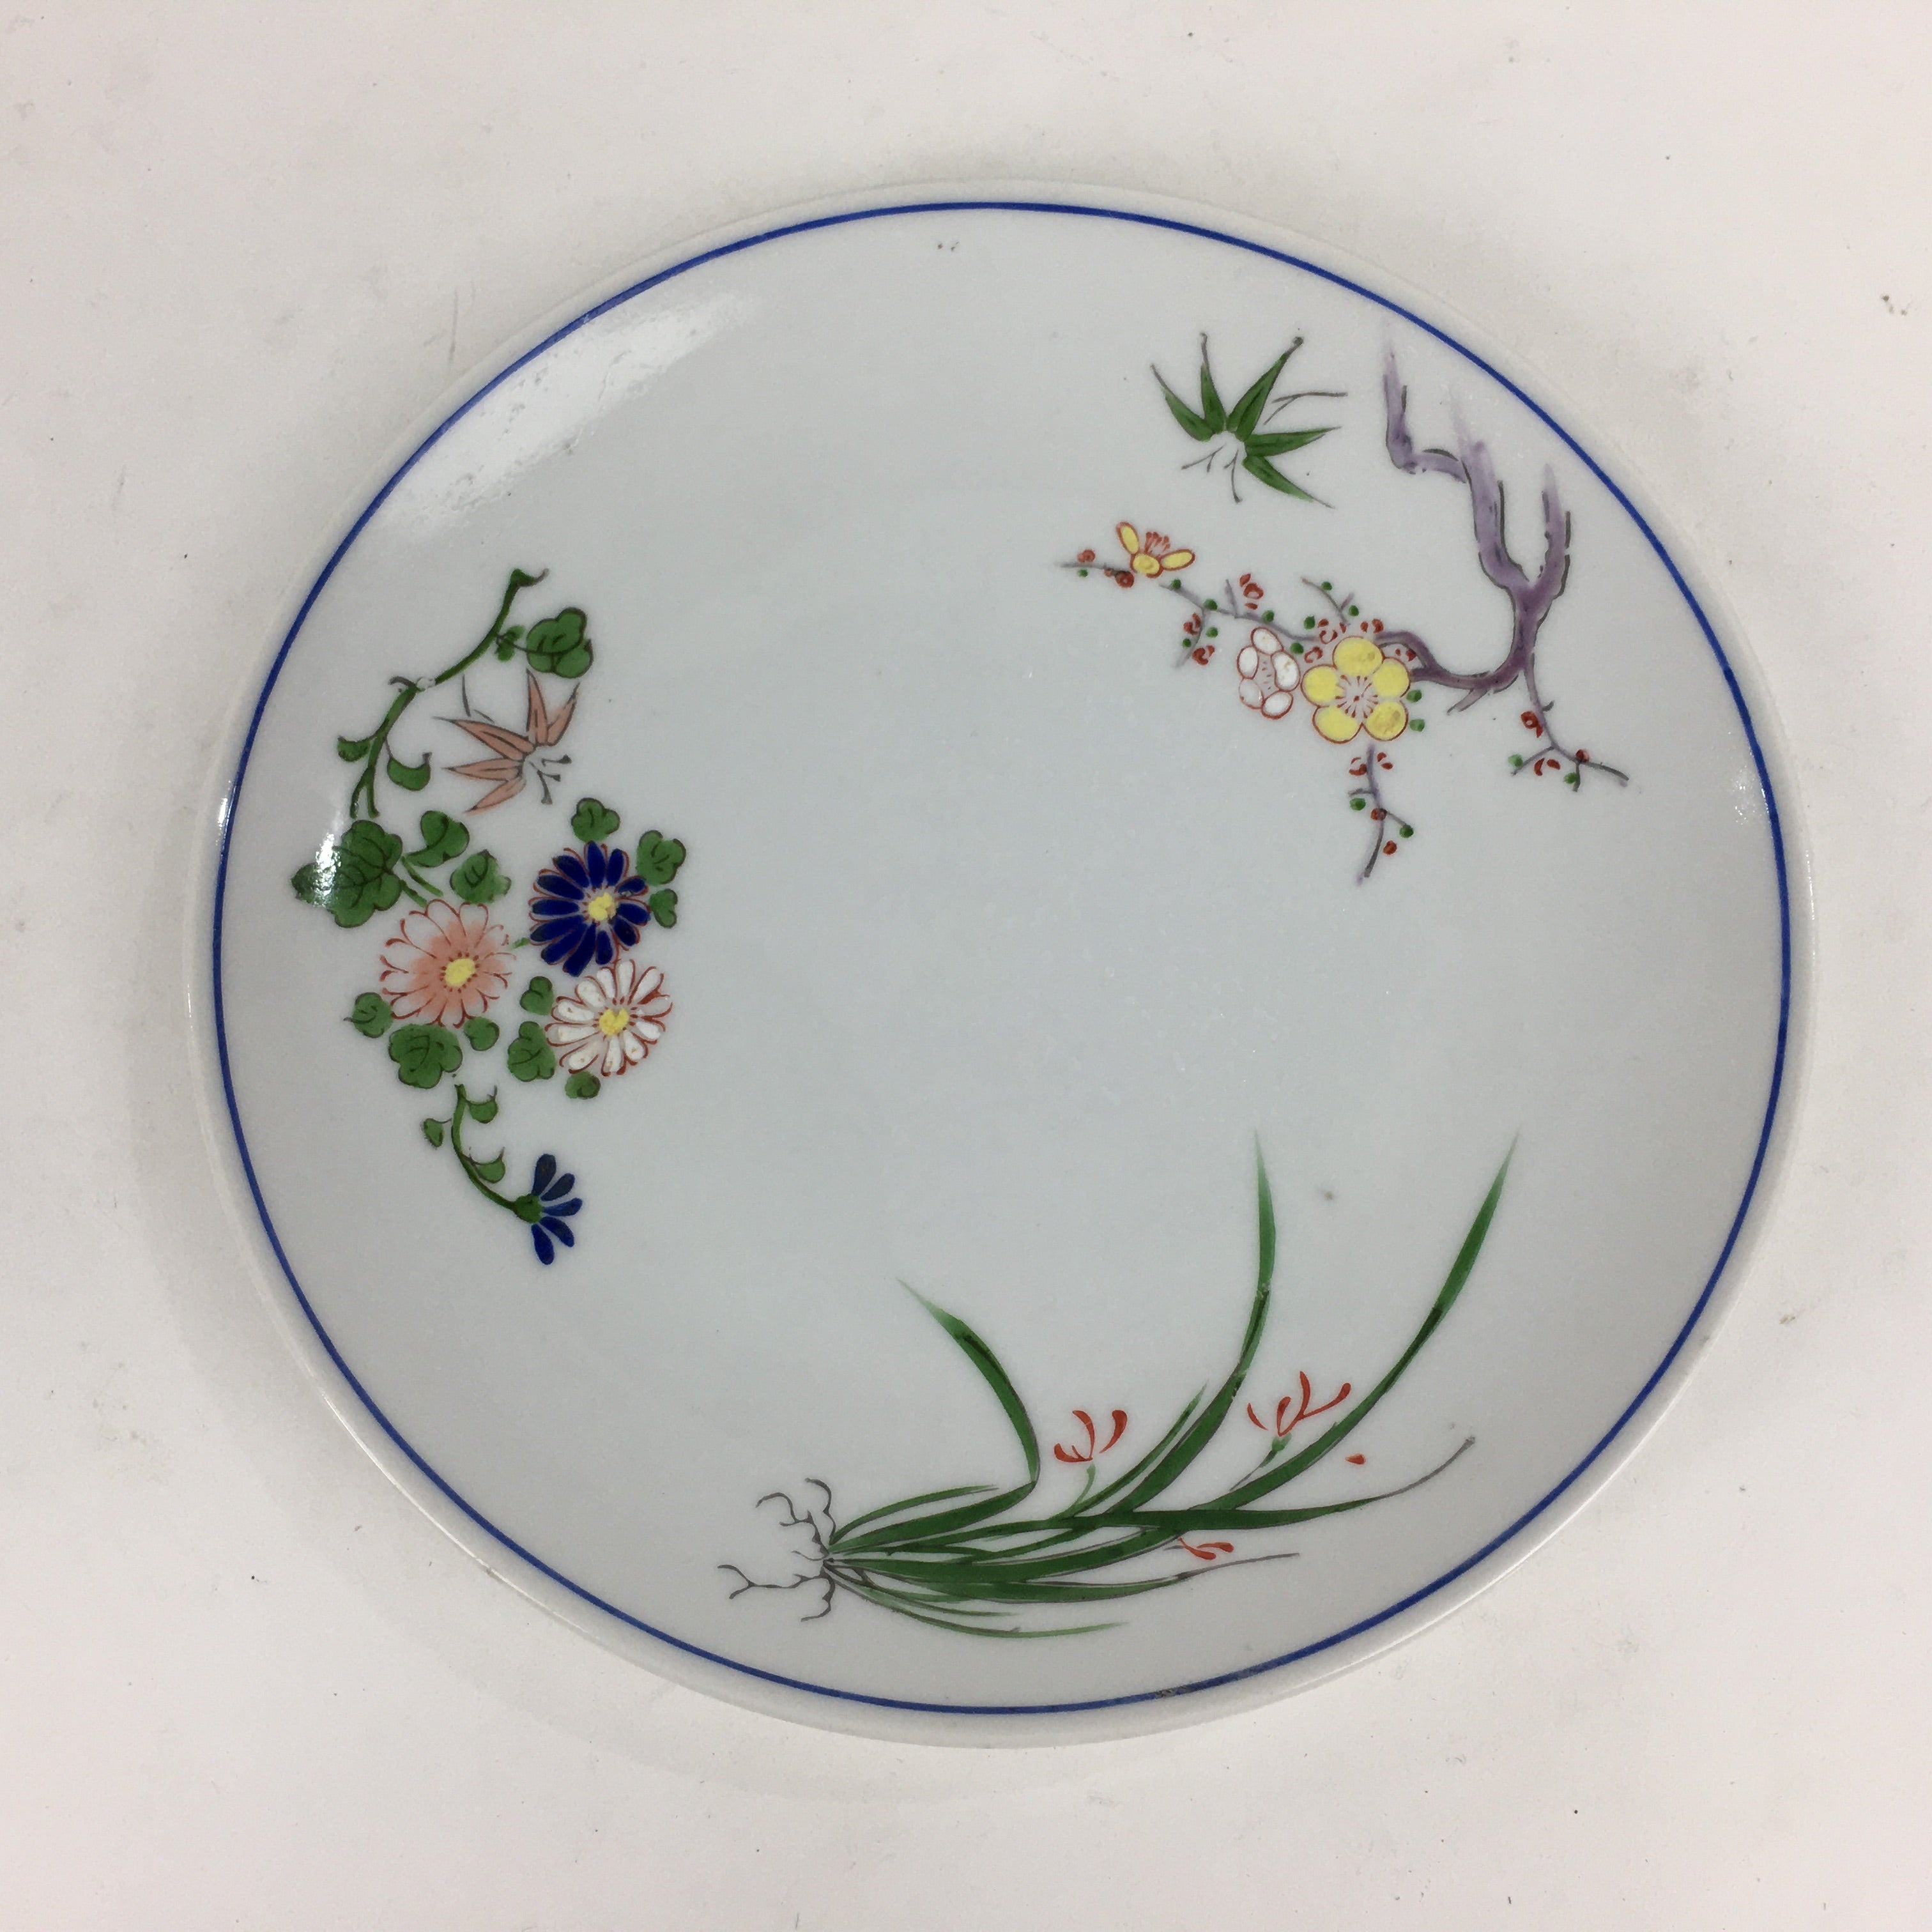 Japanese Porcelain Kutani Ware Plate Vtg White Flower Design Round Sara PP768